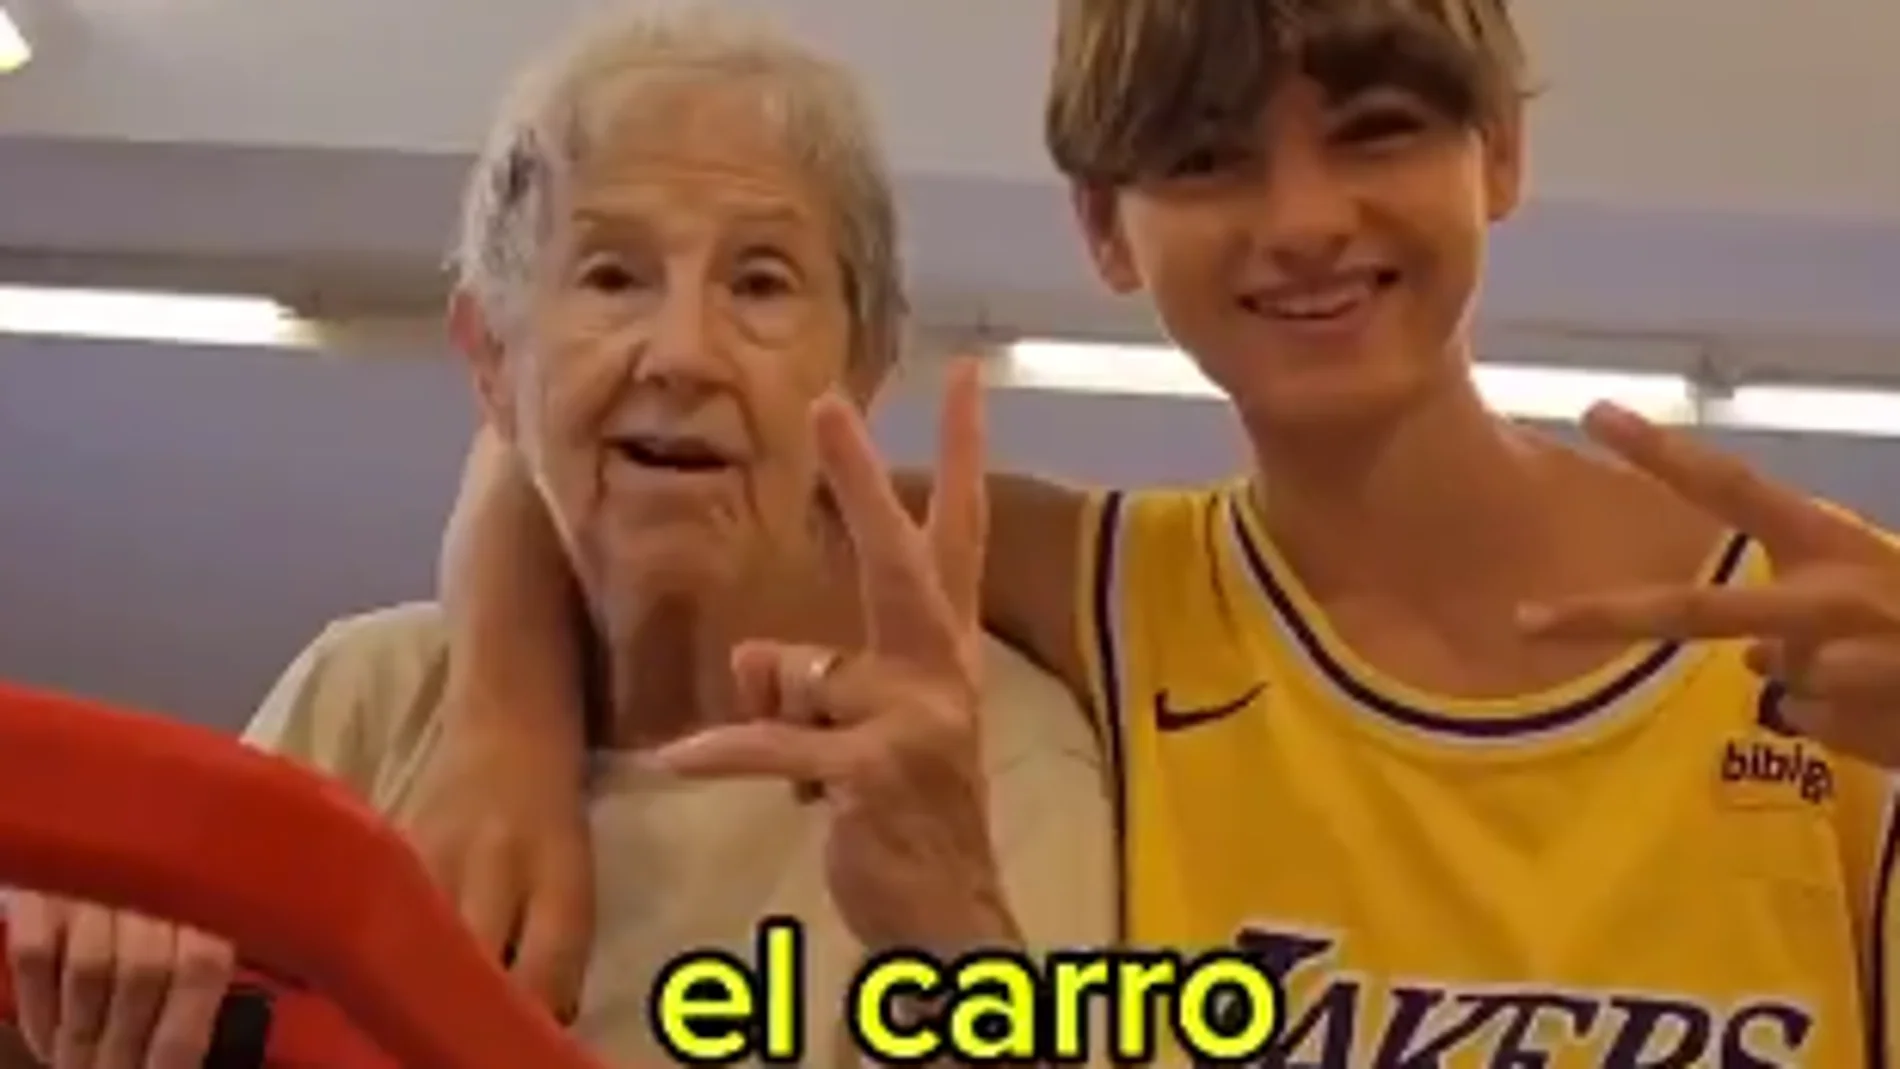 Un joven acompaña a su abuela al supermercado y se hace viral